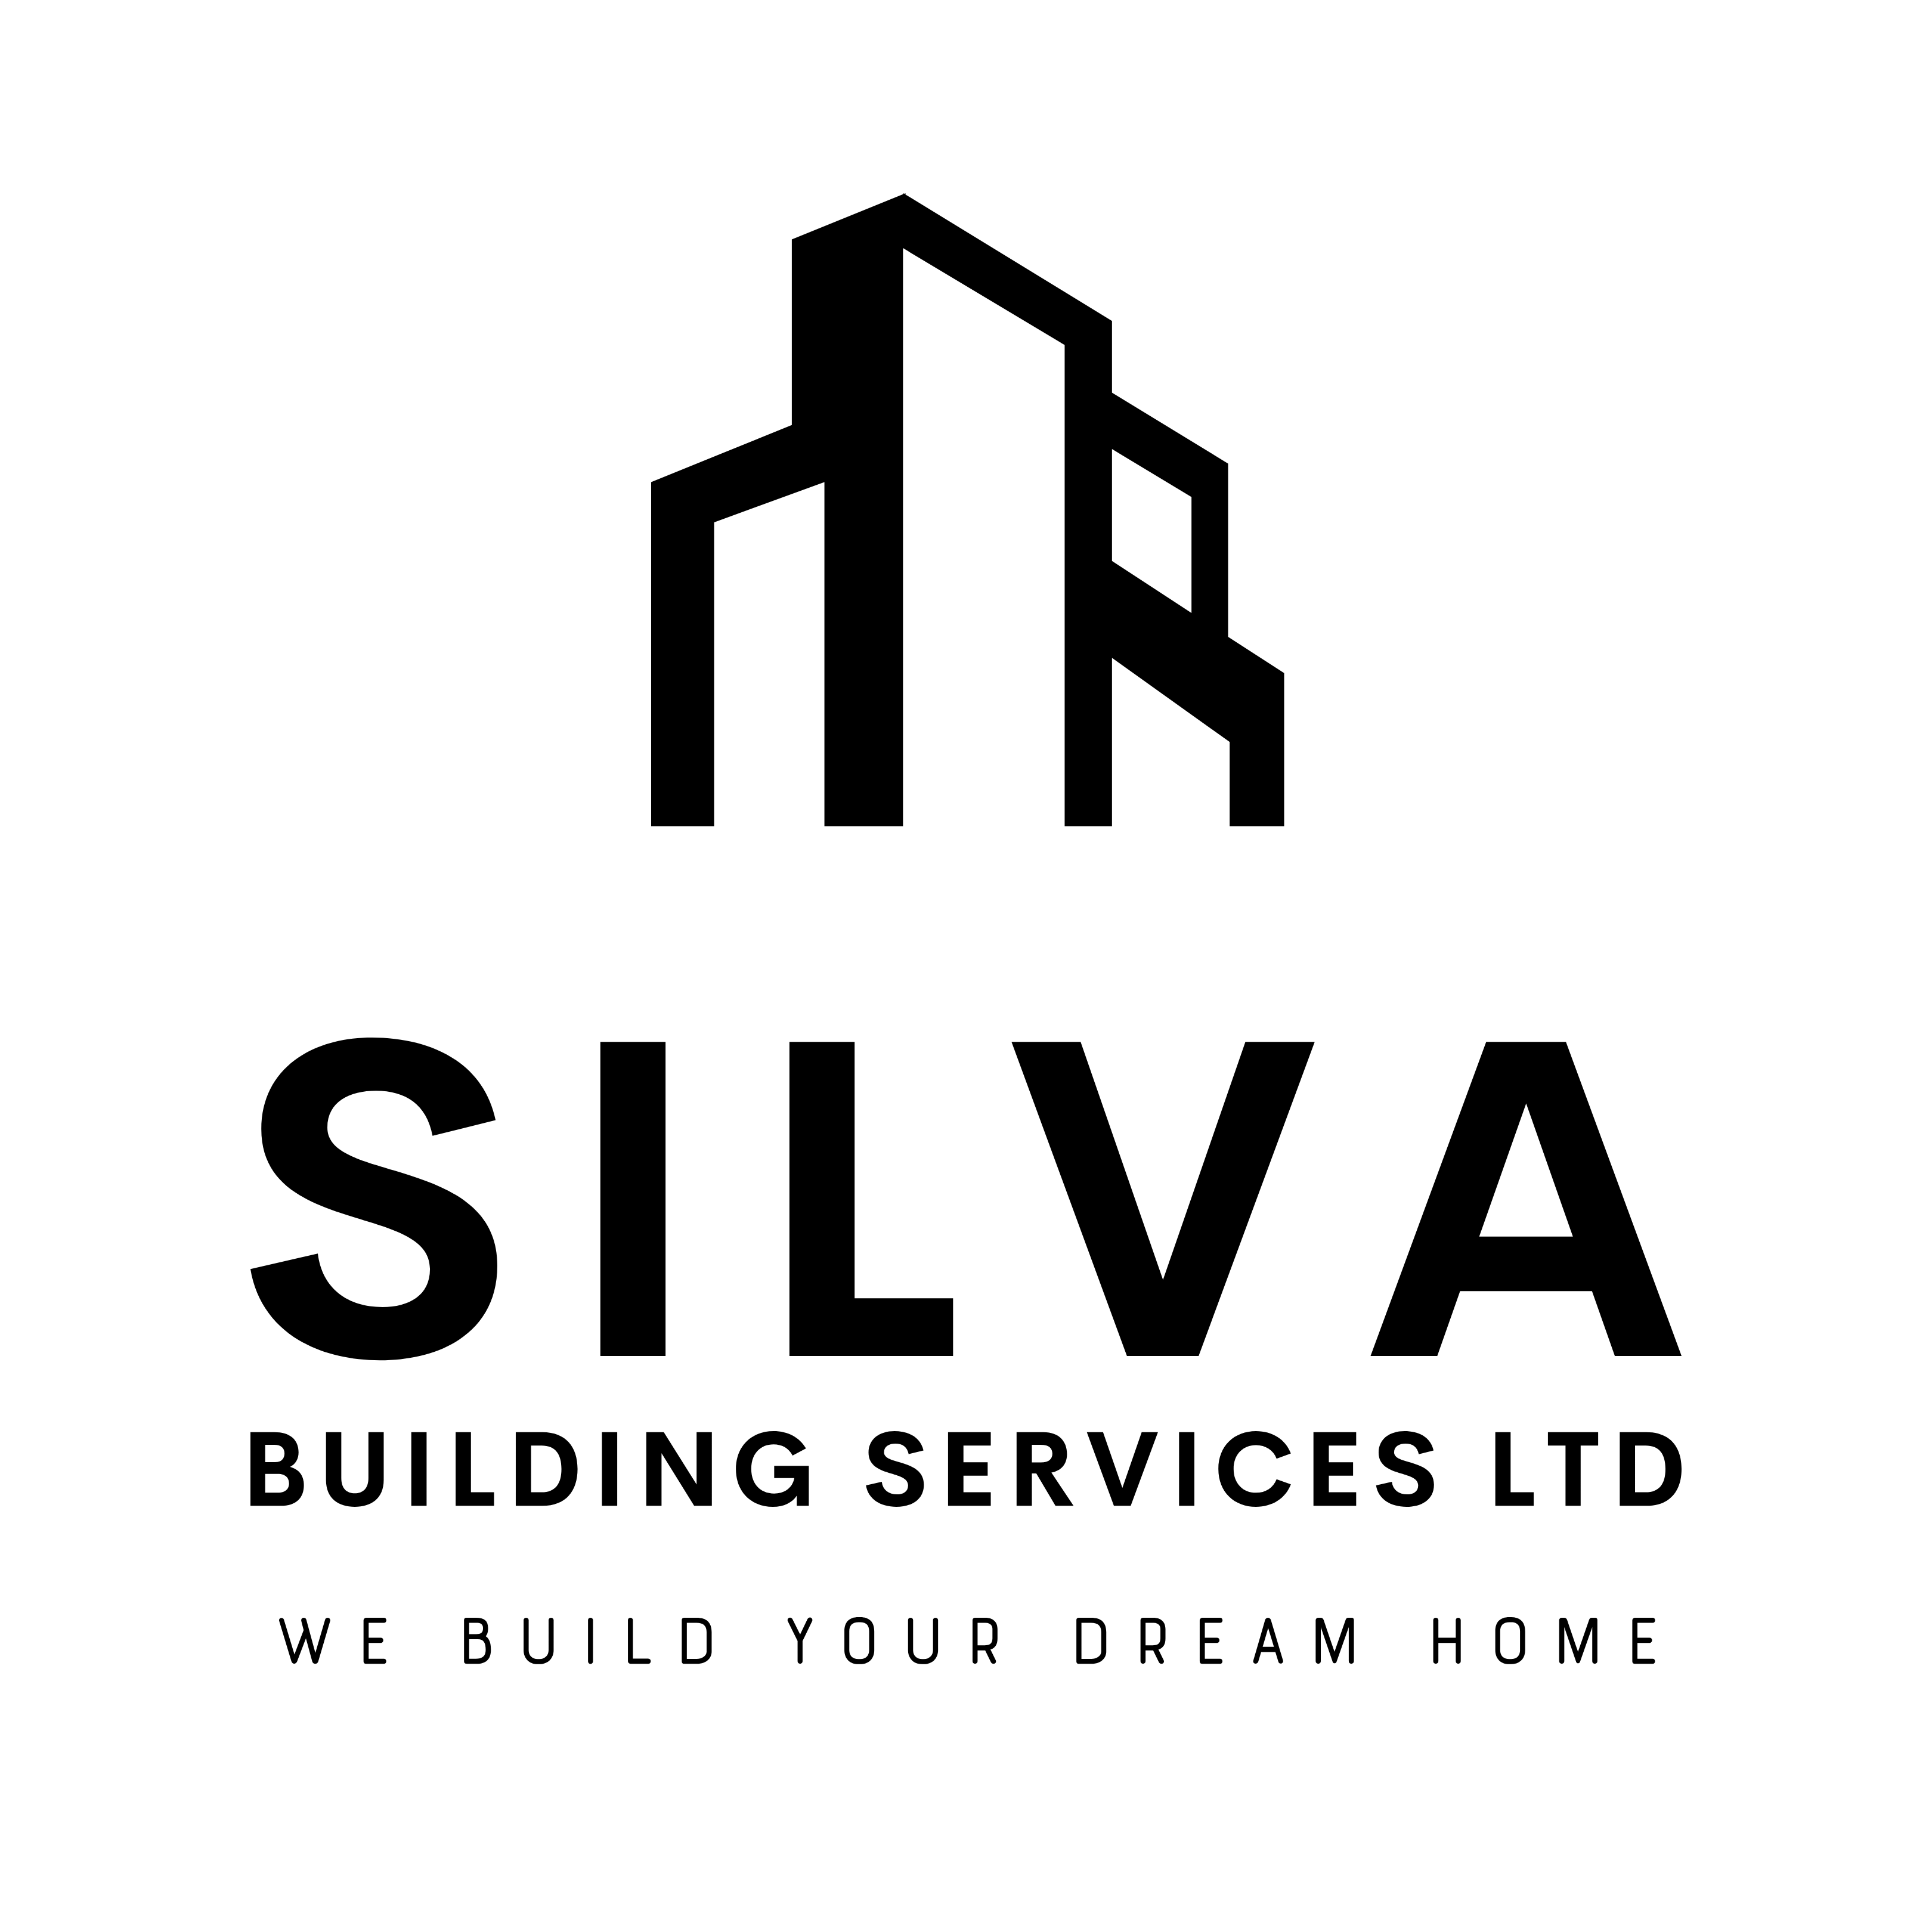 Silva Building Services Ltd